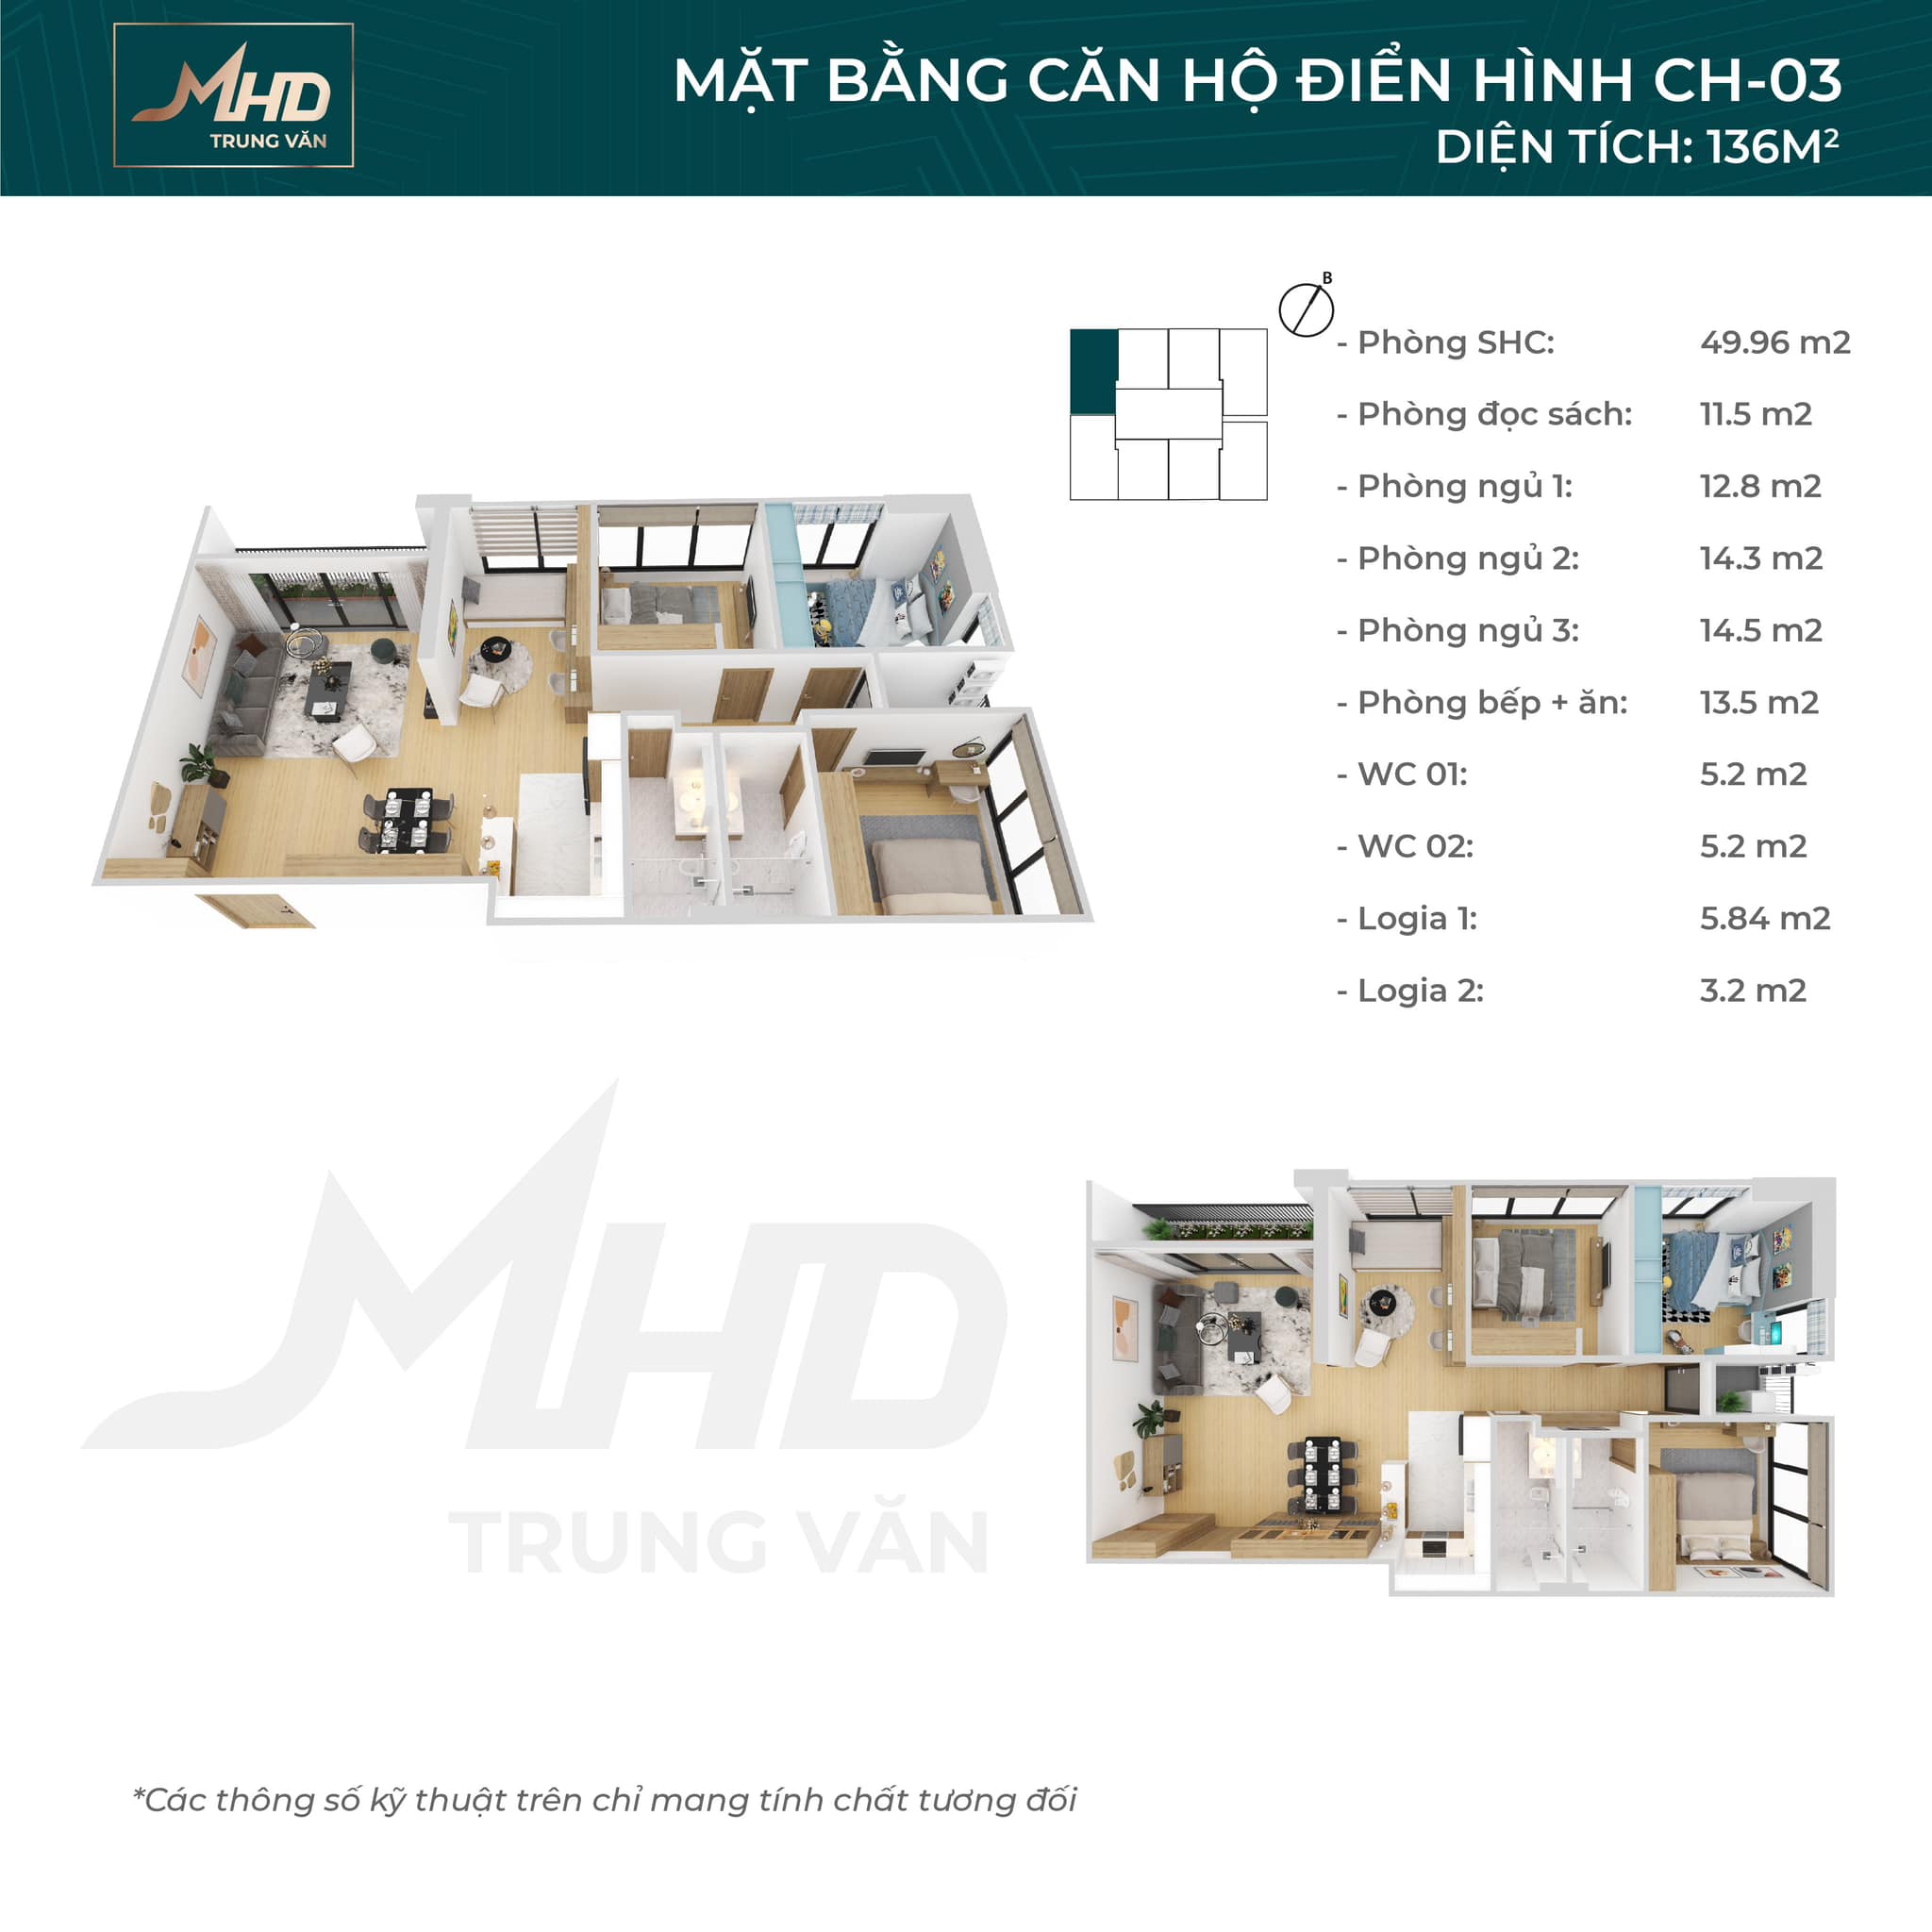 Bán căn 3 ngủ + 1 thiết kế đẹp nhất, view đẹp nhất dự án MHD Trung Văn - 29 Tố Hữu. LH 0934 306 262 6